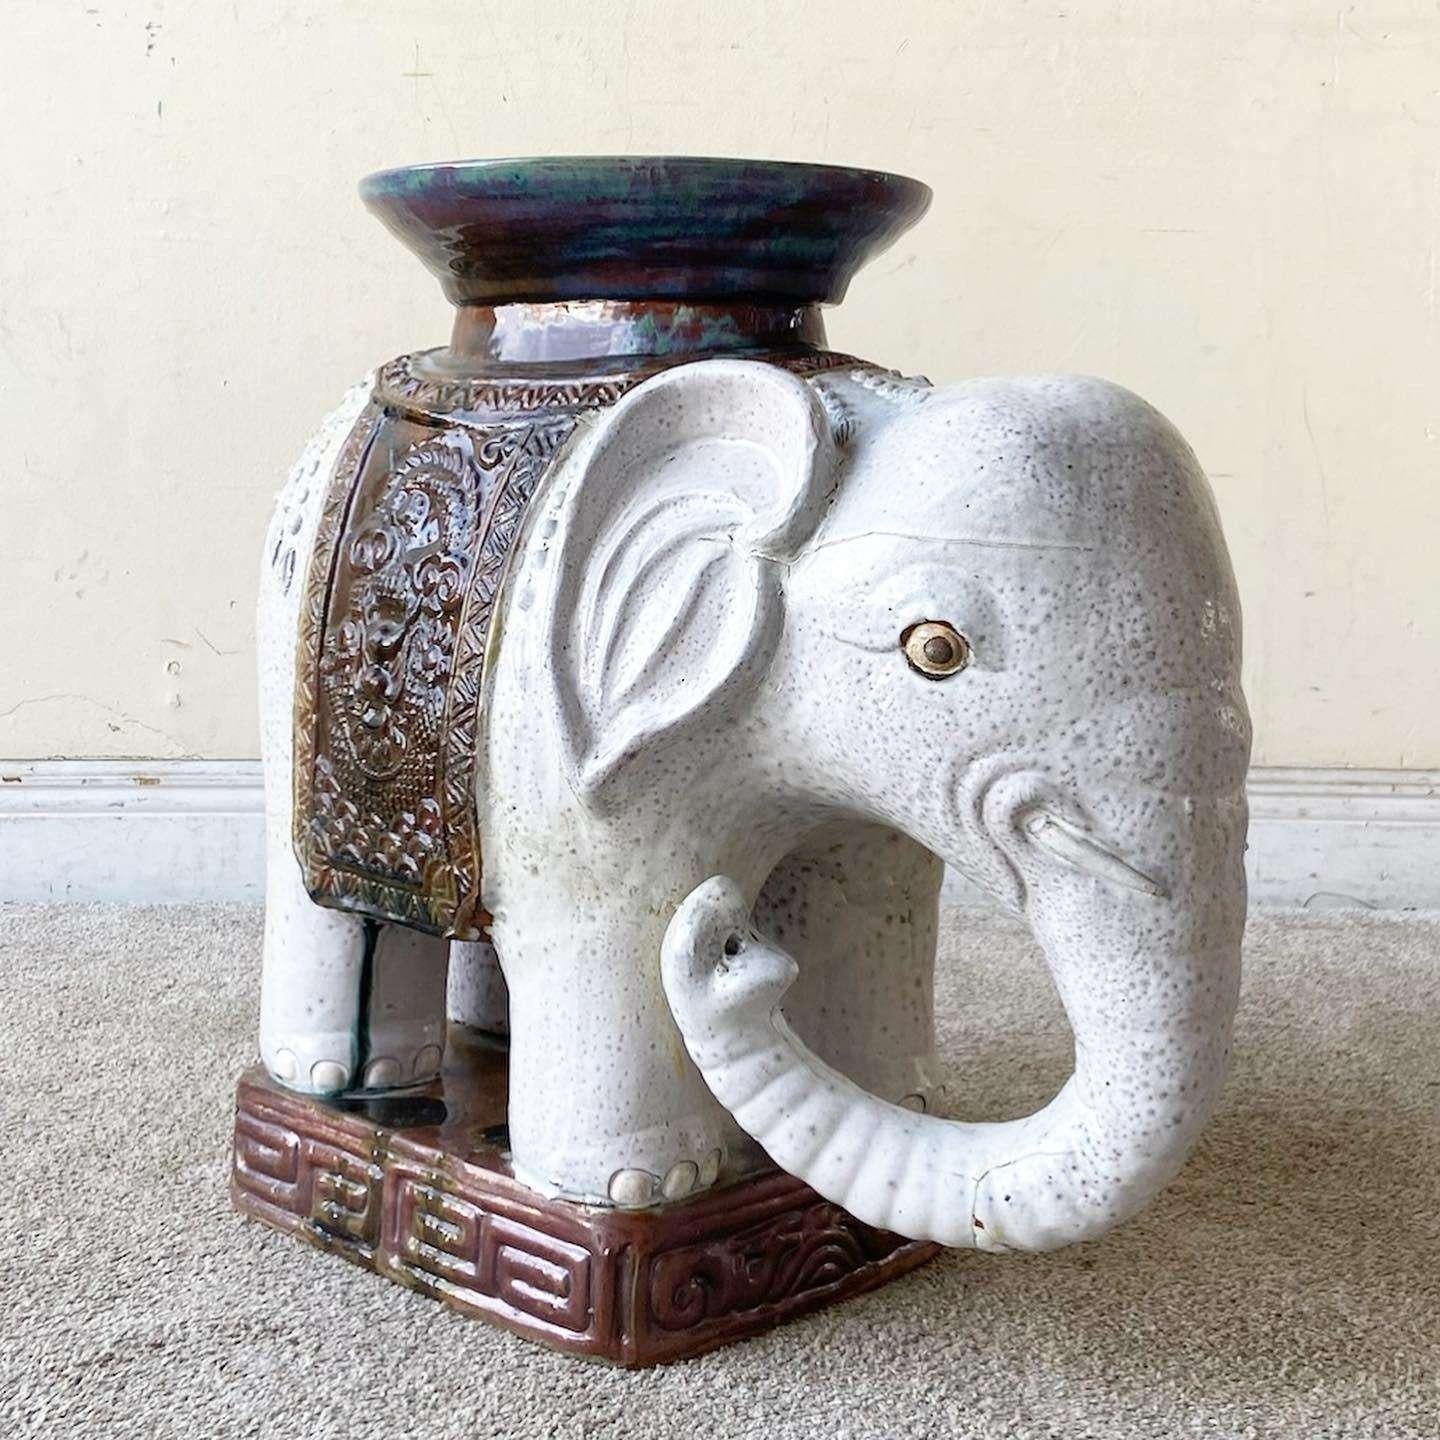 Erstaunlich Vintage asiatischen Keramik Elefant Beistelltisch / Skulptur. Handbemaltes Finish in Grau und Braun.